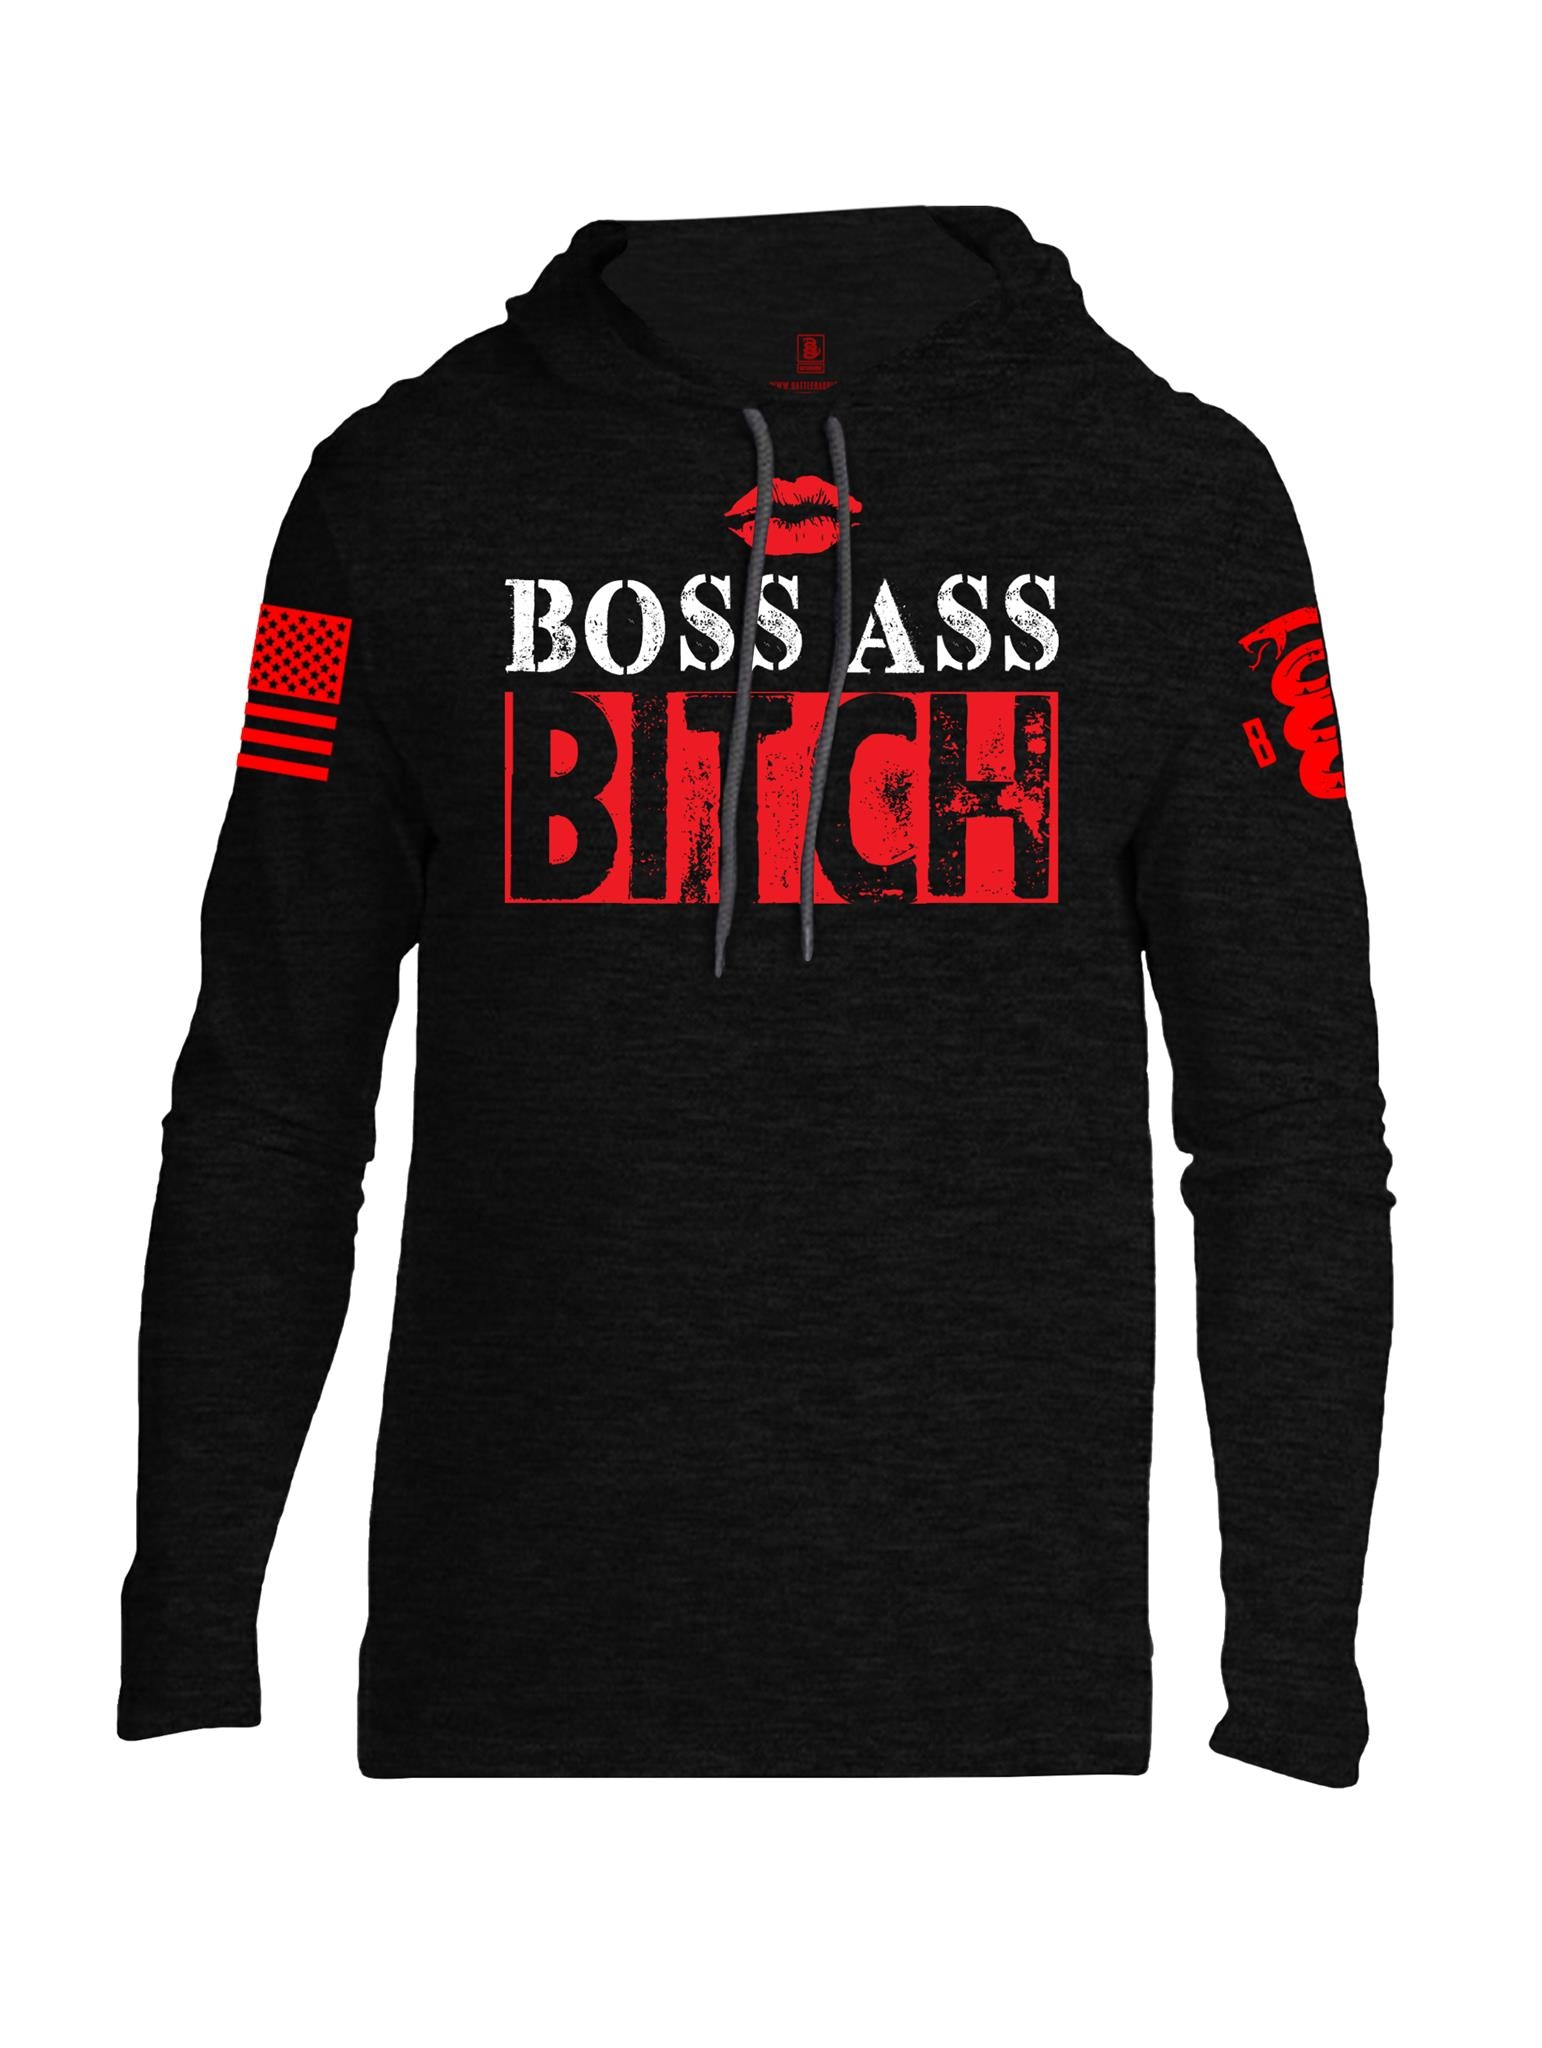 Battleraddle Boss Ass Bitch Red Sleeve Print Mens Thin Cotton Lightweight Hoodie